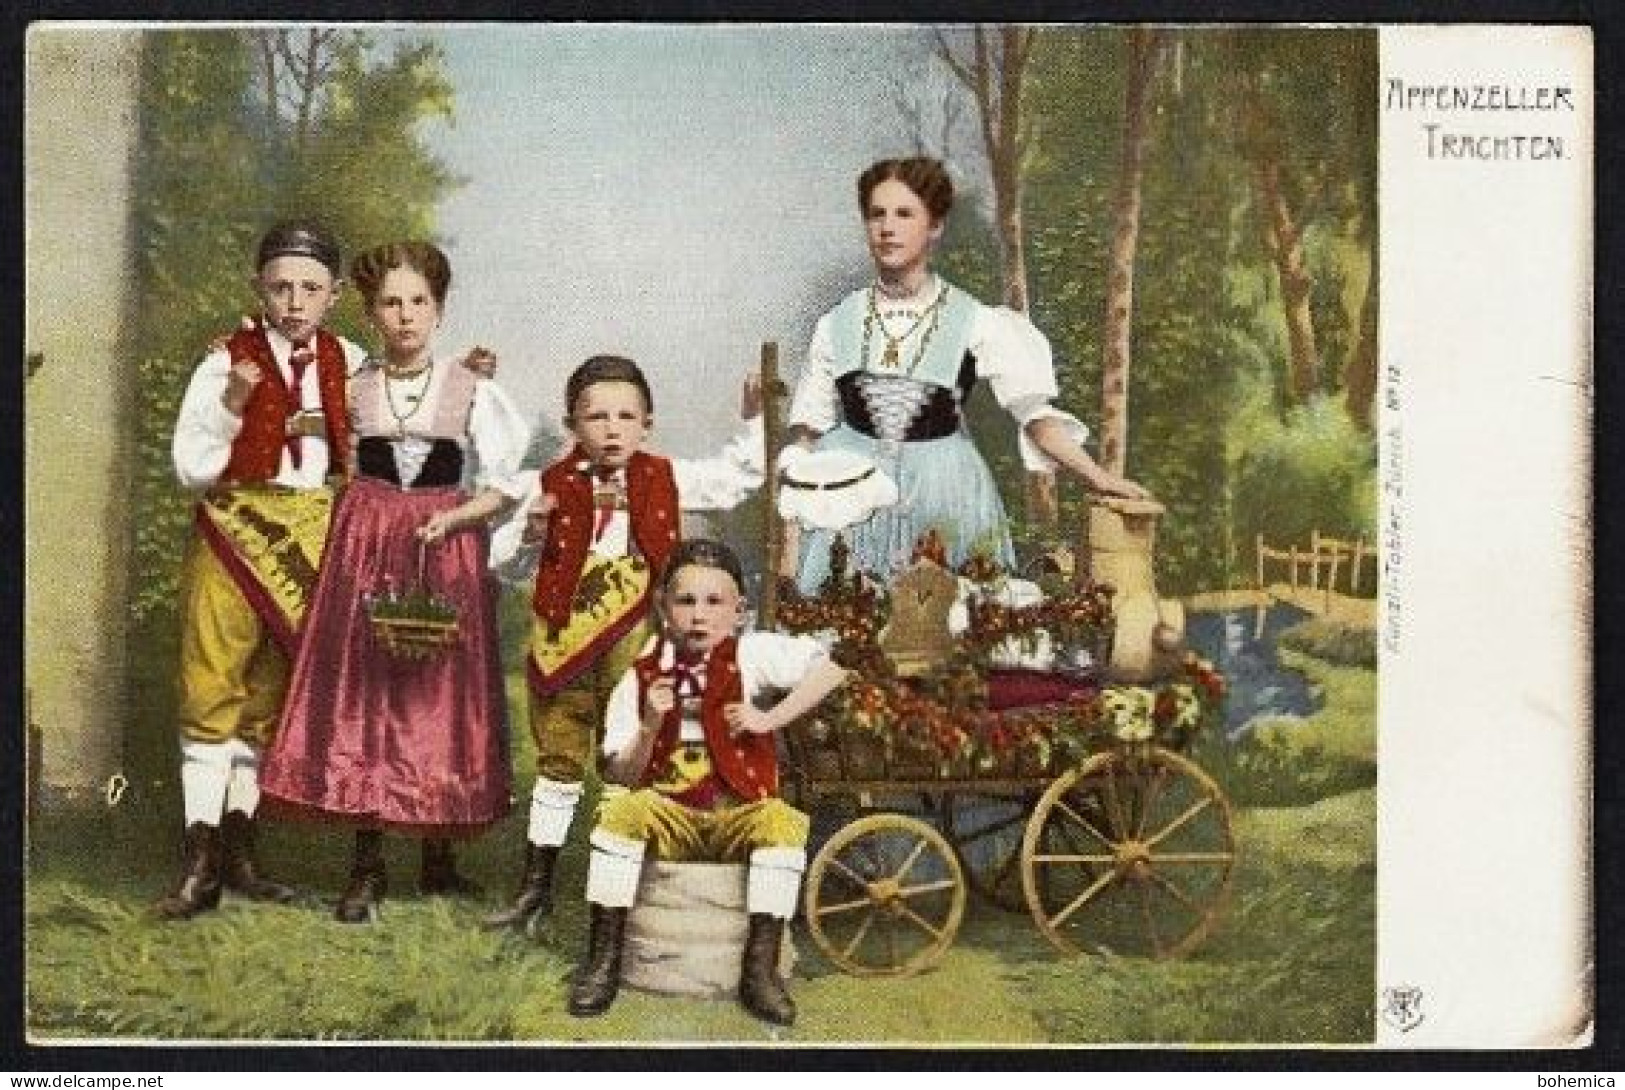 SCHWEIZ APPENZELLER TRACHTEN FRAU KINDER KÜNZLI TOBLER ZÜRICH 1900 - Costumes